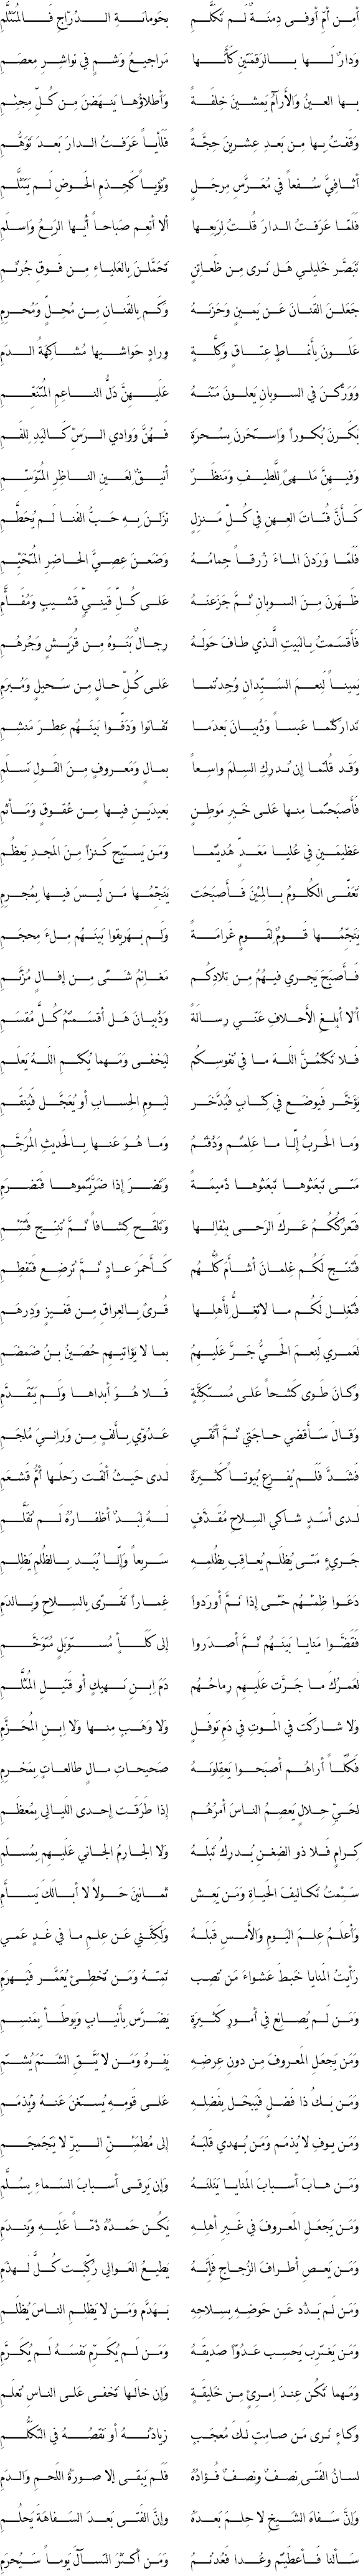 من روائع الشعر العربي.....المعلقات العشر Zohir10